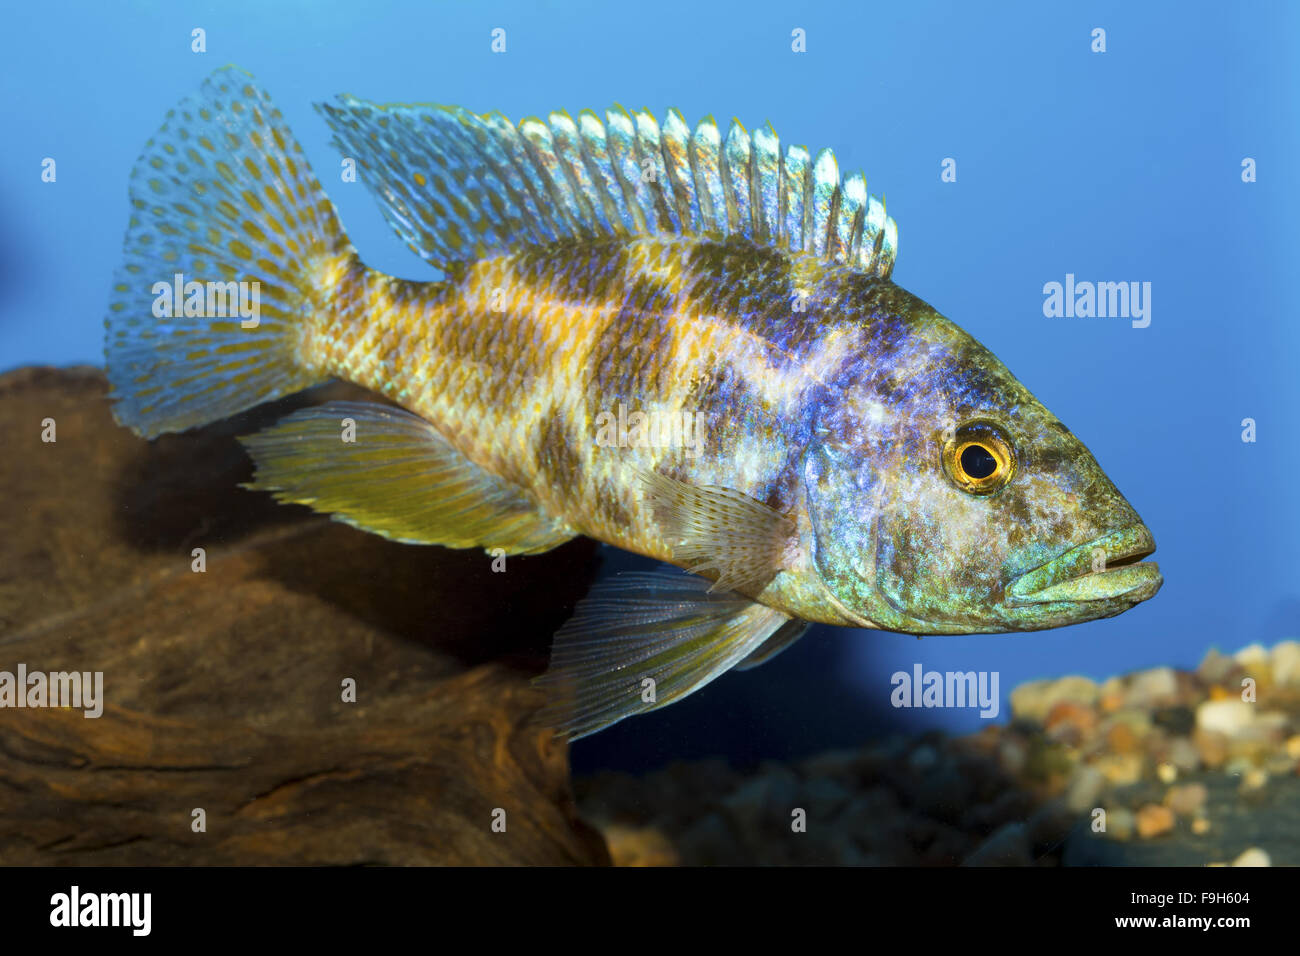 Cichlid fish from genus Nimbochromis in the aquarium Stock Photo